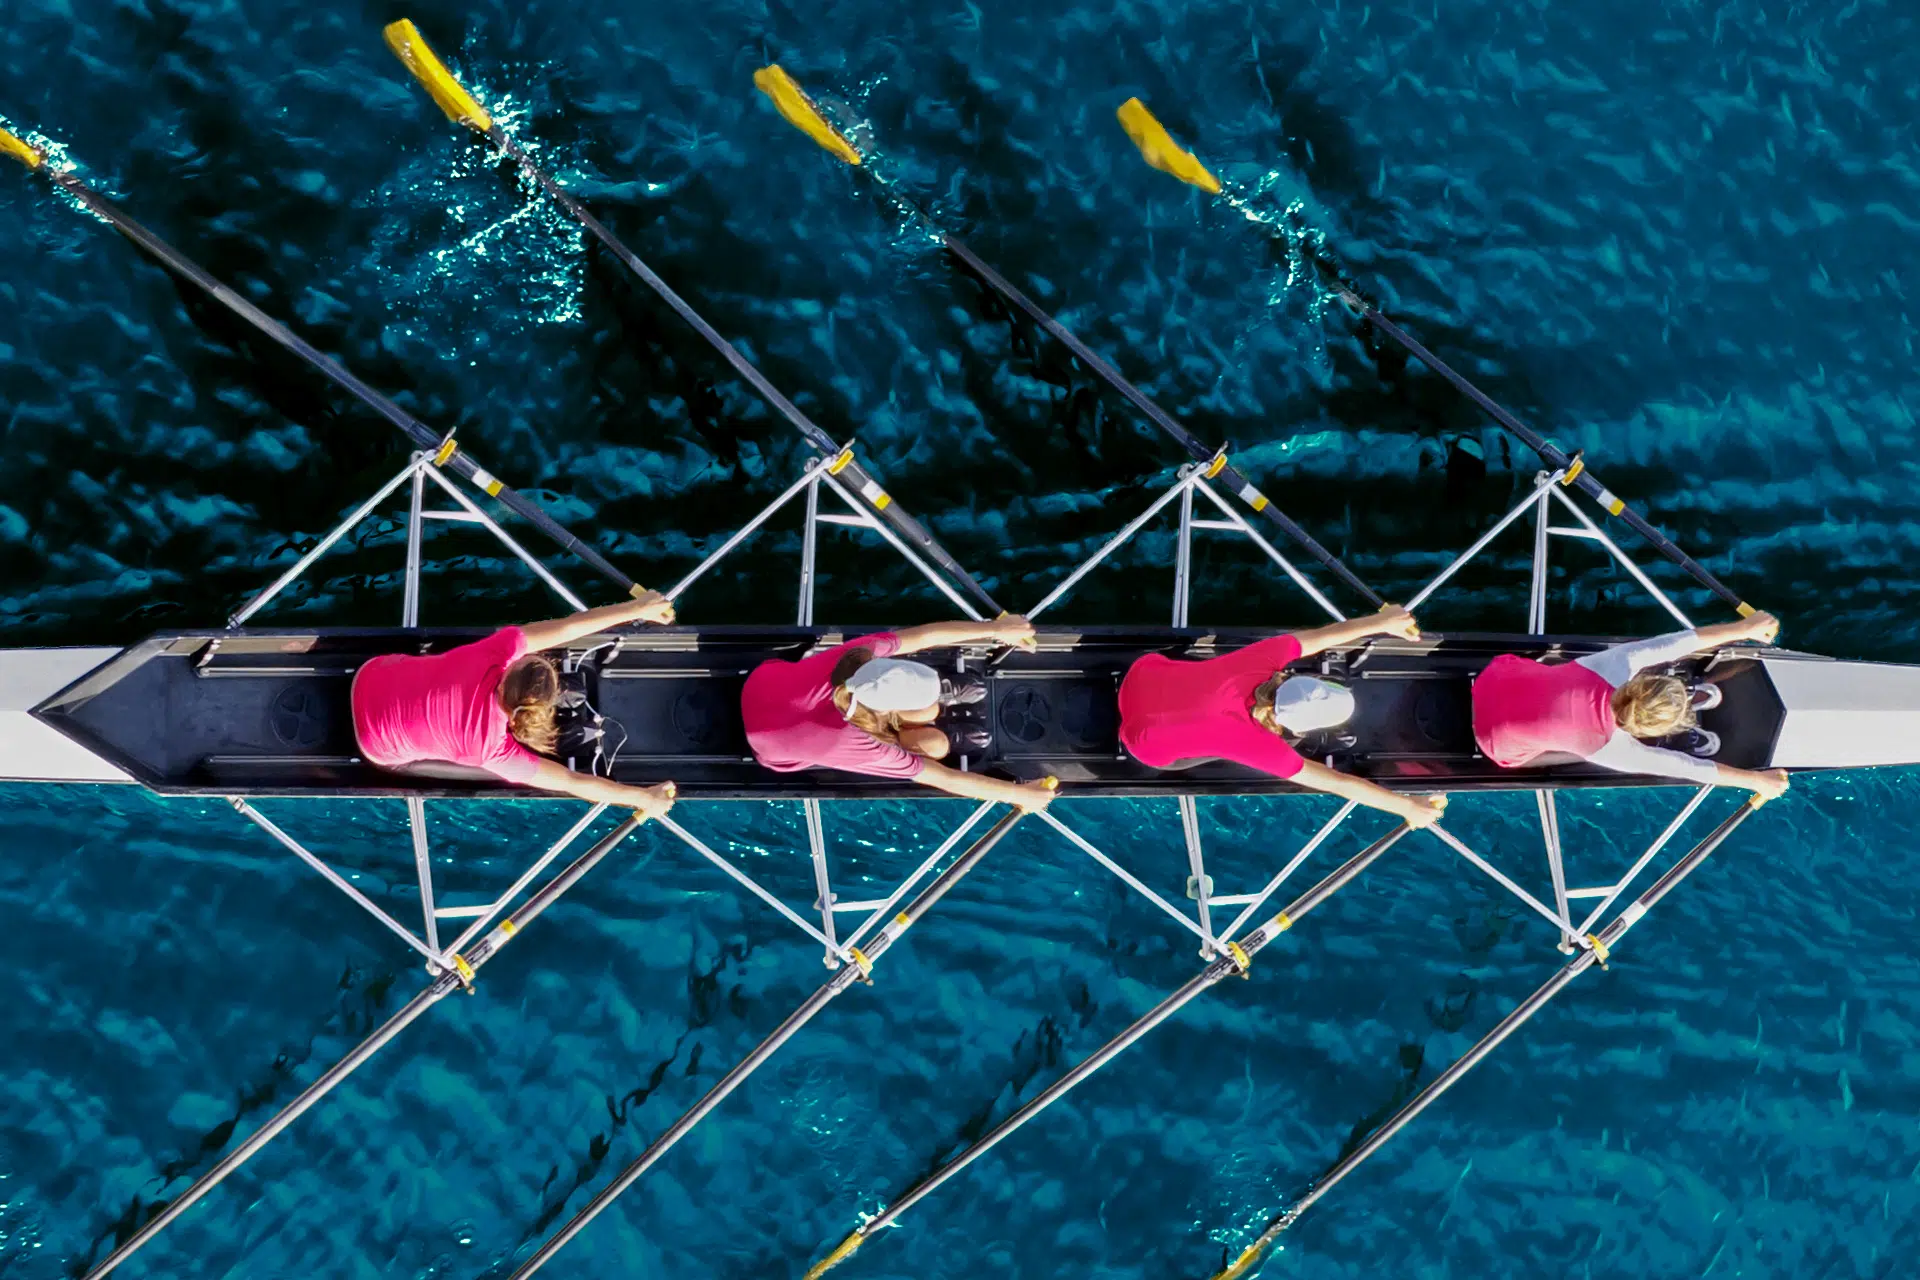 Vue de haut de quatres rameurs dans leur aviron glissant sur l'eau